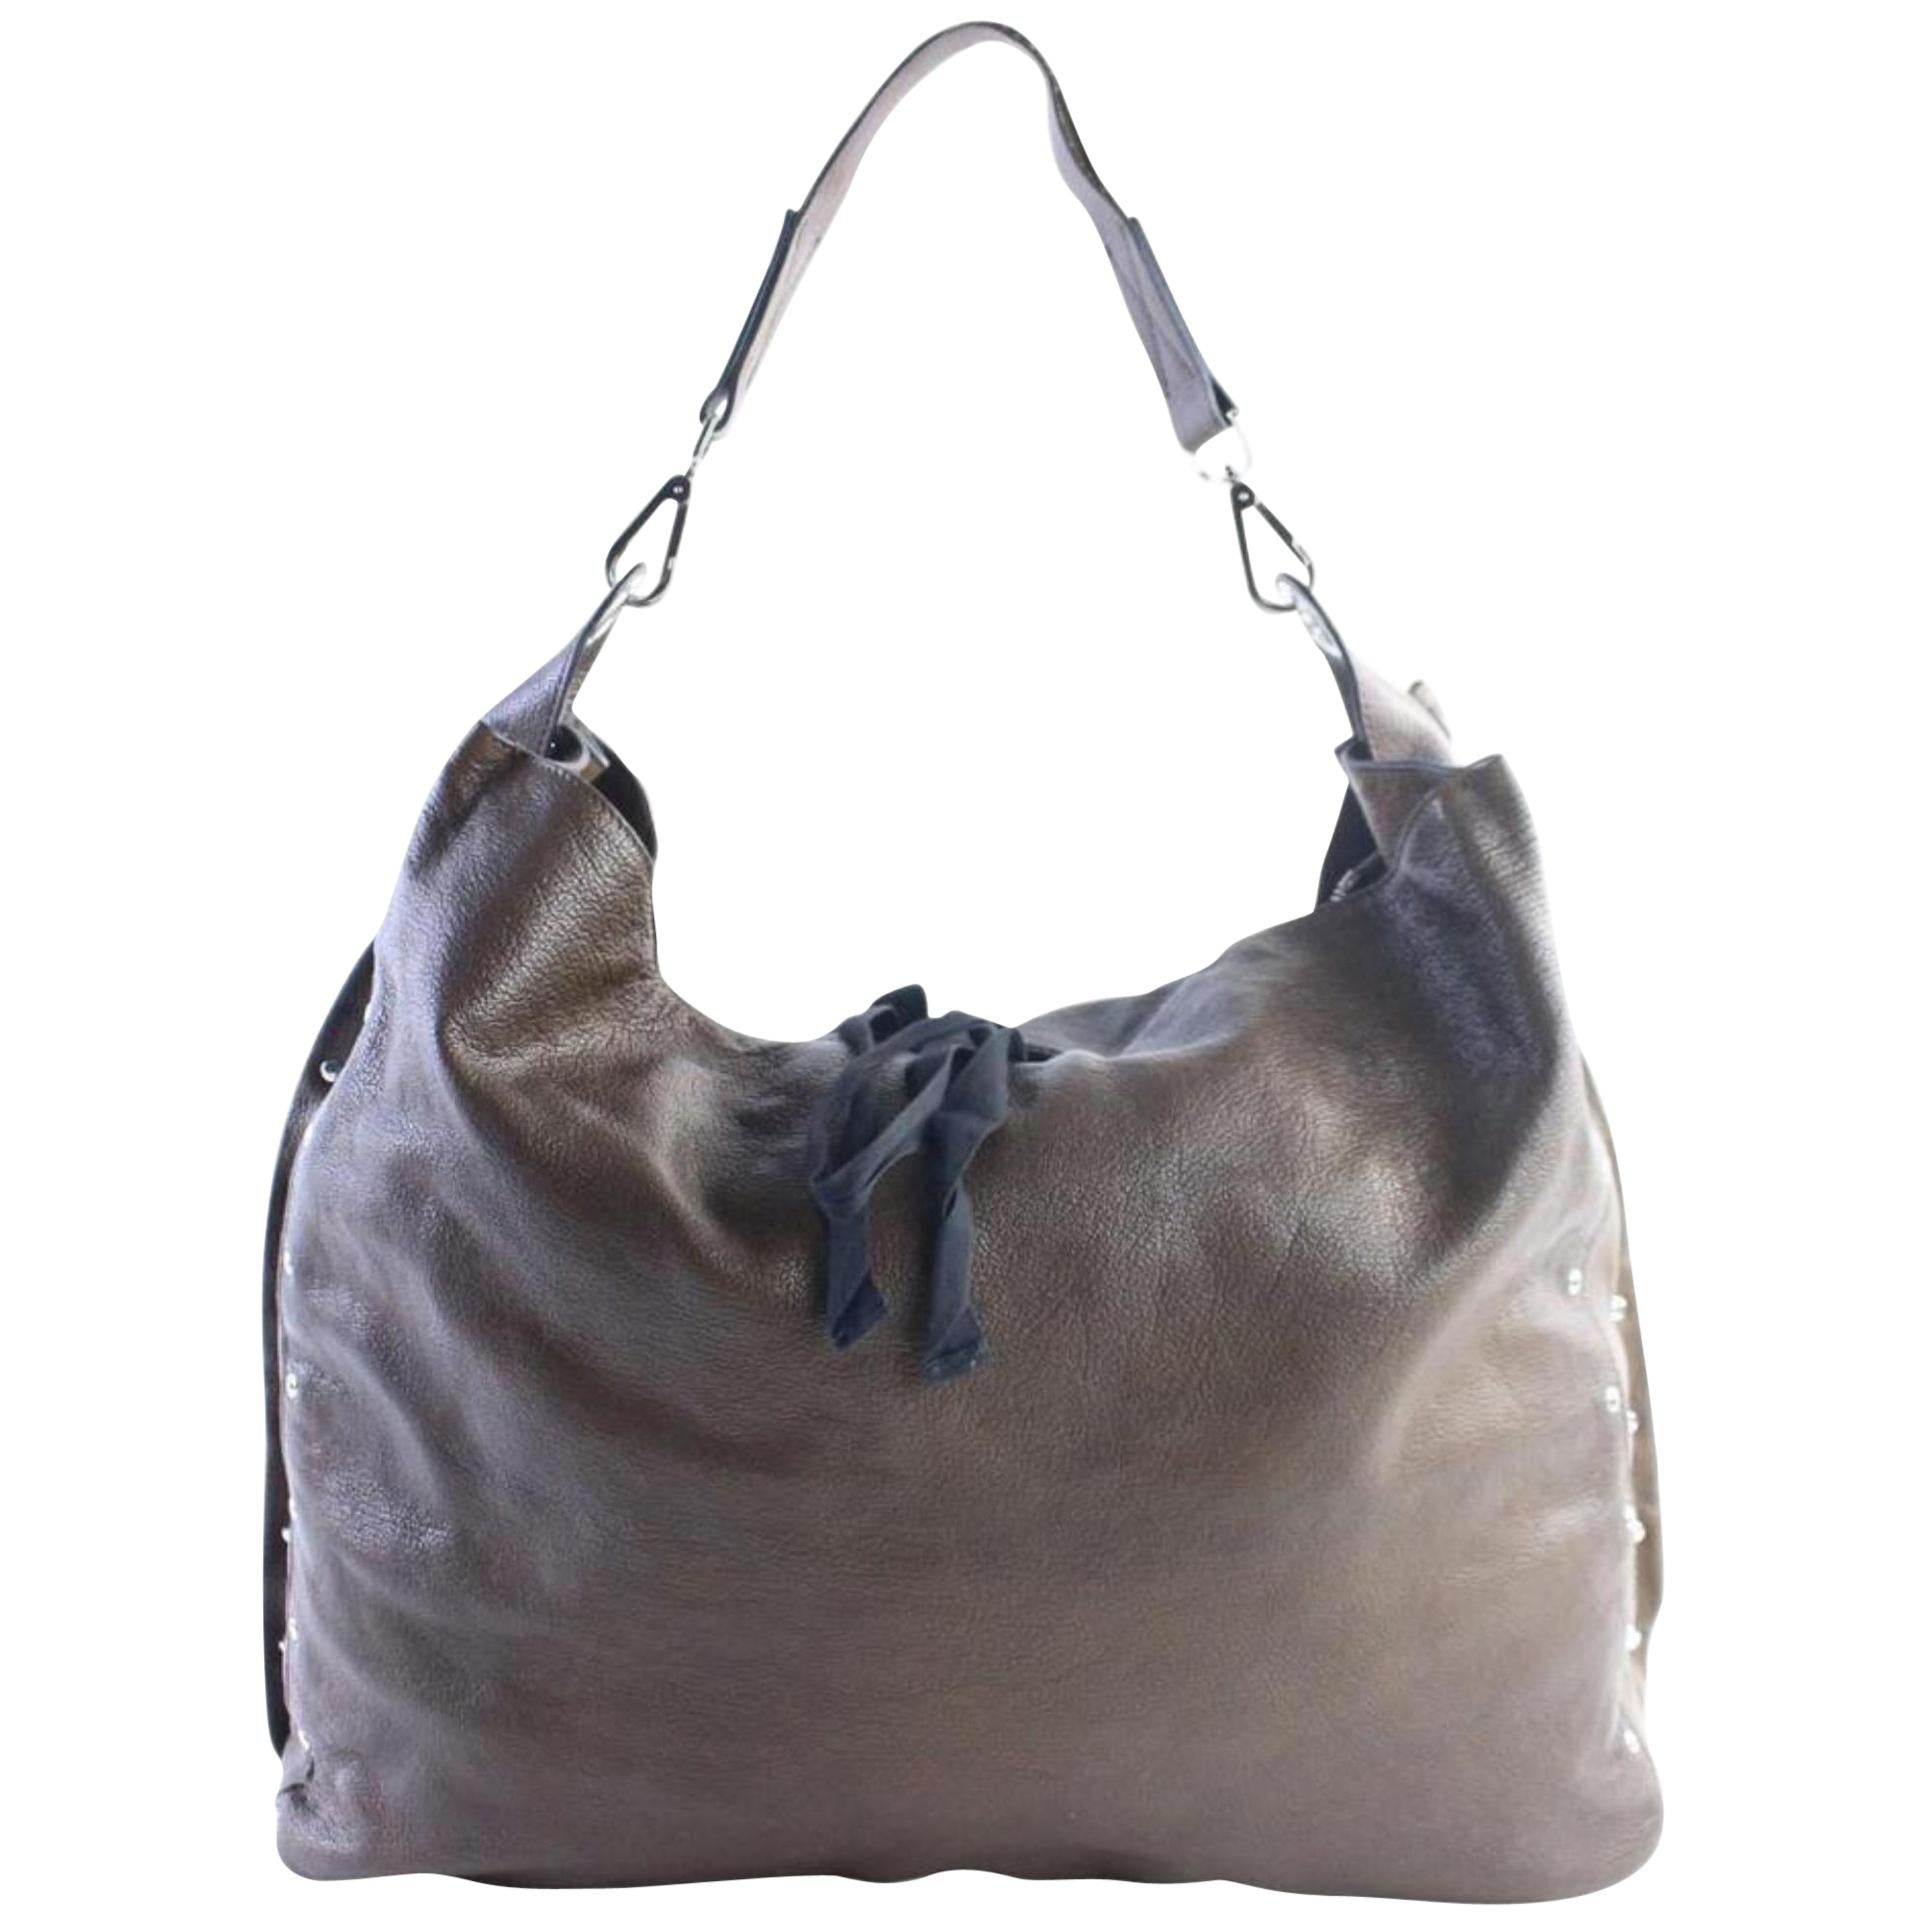 Marni Hobo 2011 Limited Studded 7mr0628 Brown Leather Shoulder Bag For Sale